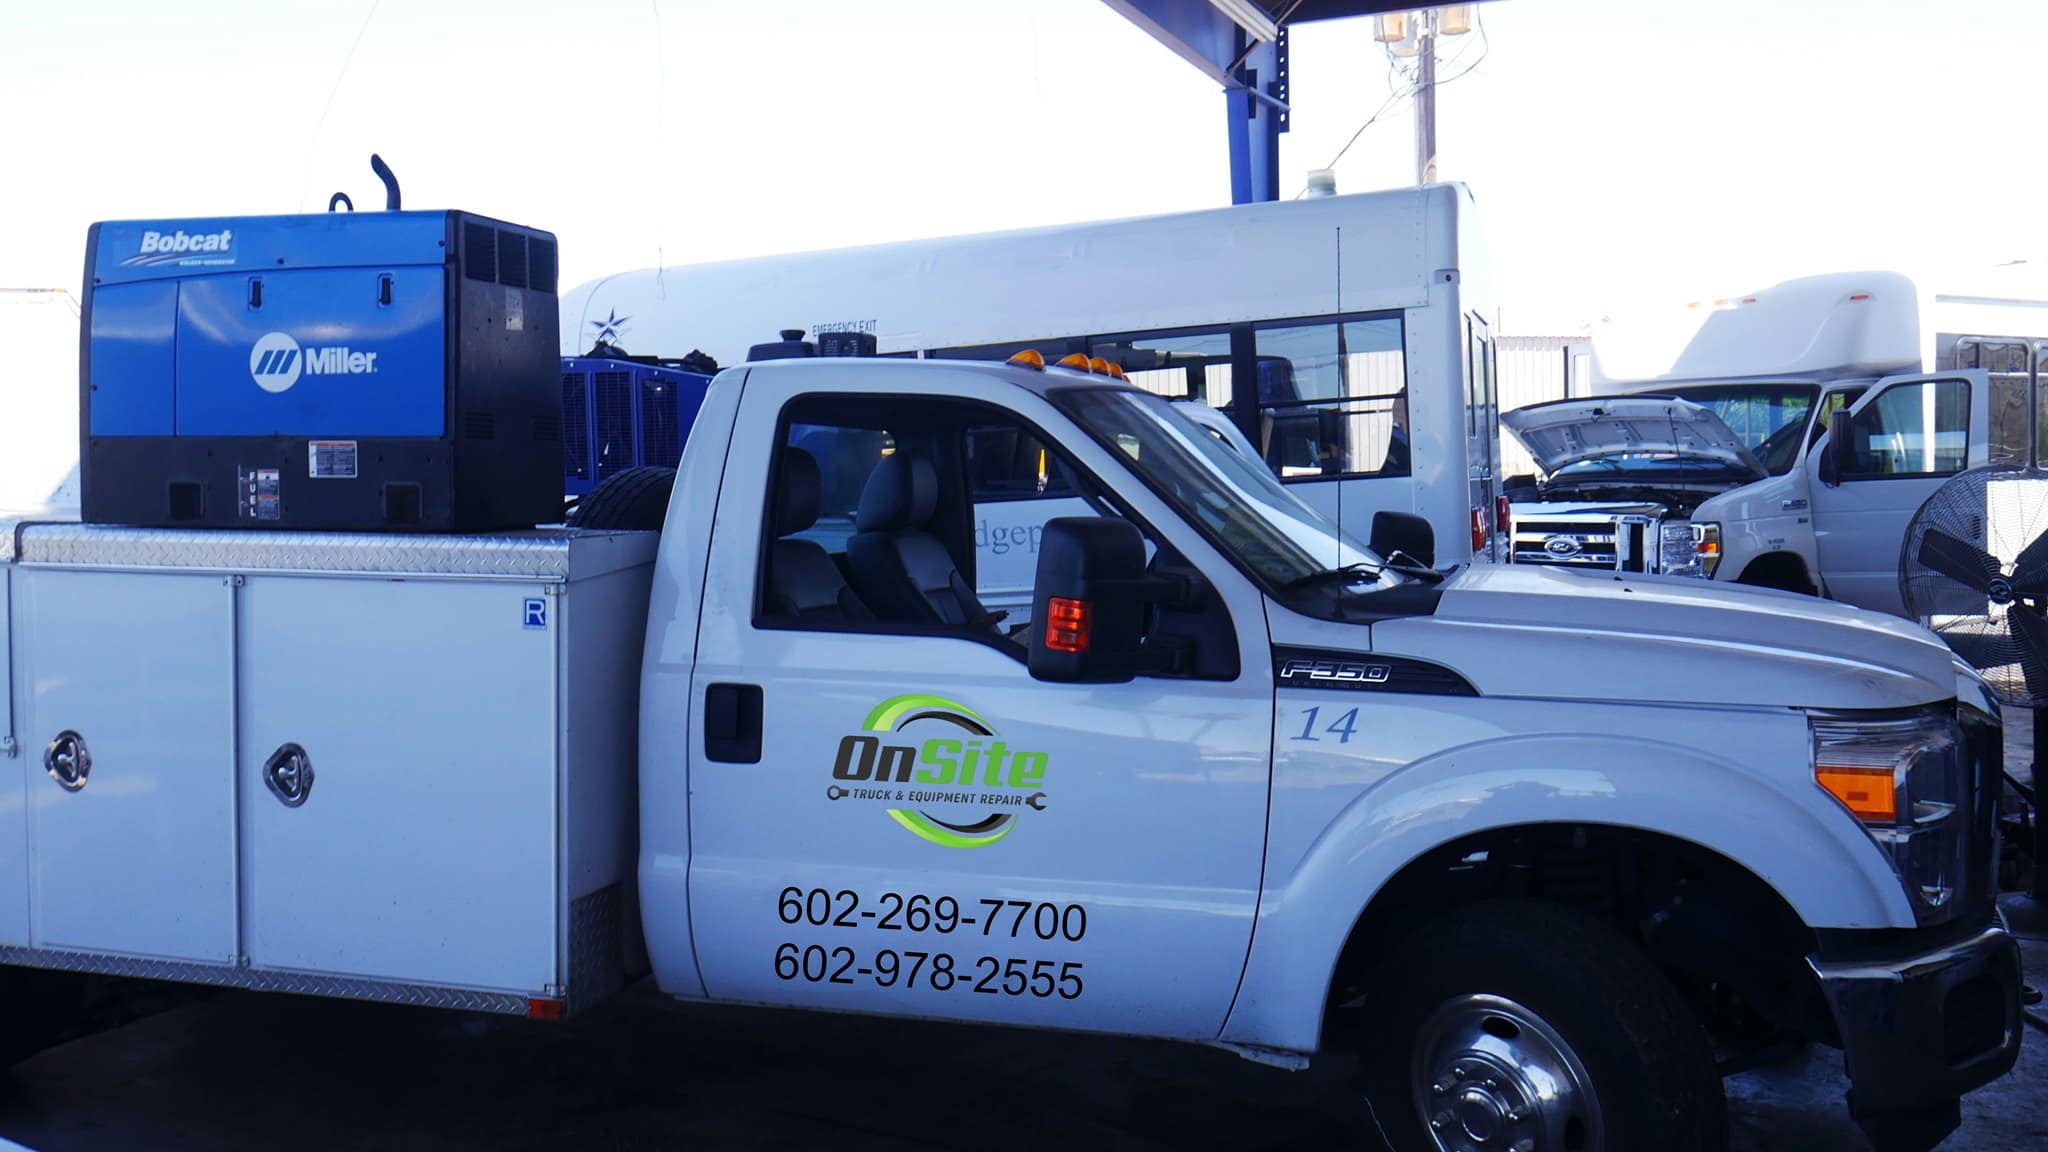 Onsite Truck & Equipment Repair - Phoenix, AZ, US, truck repair near me